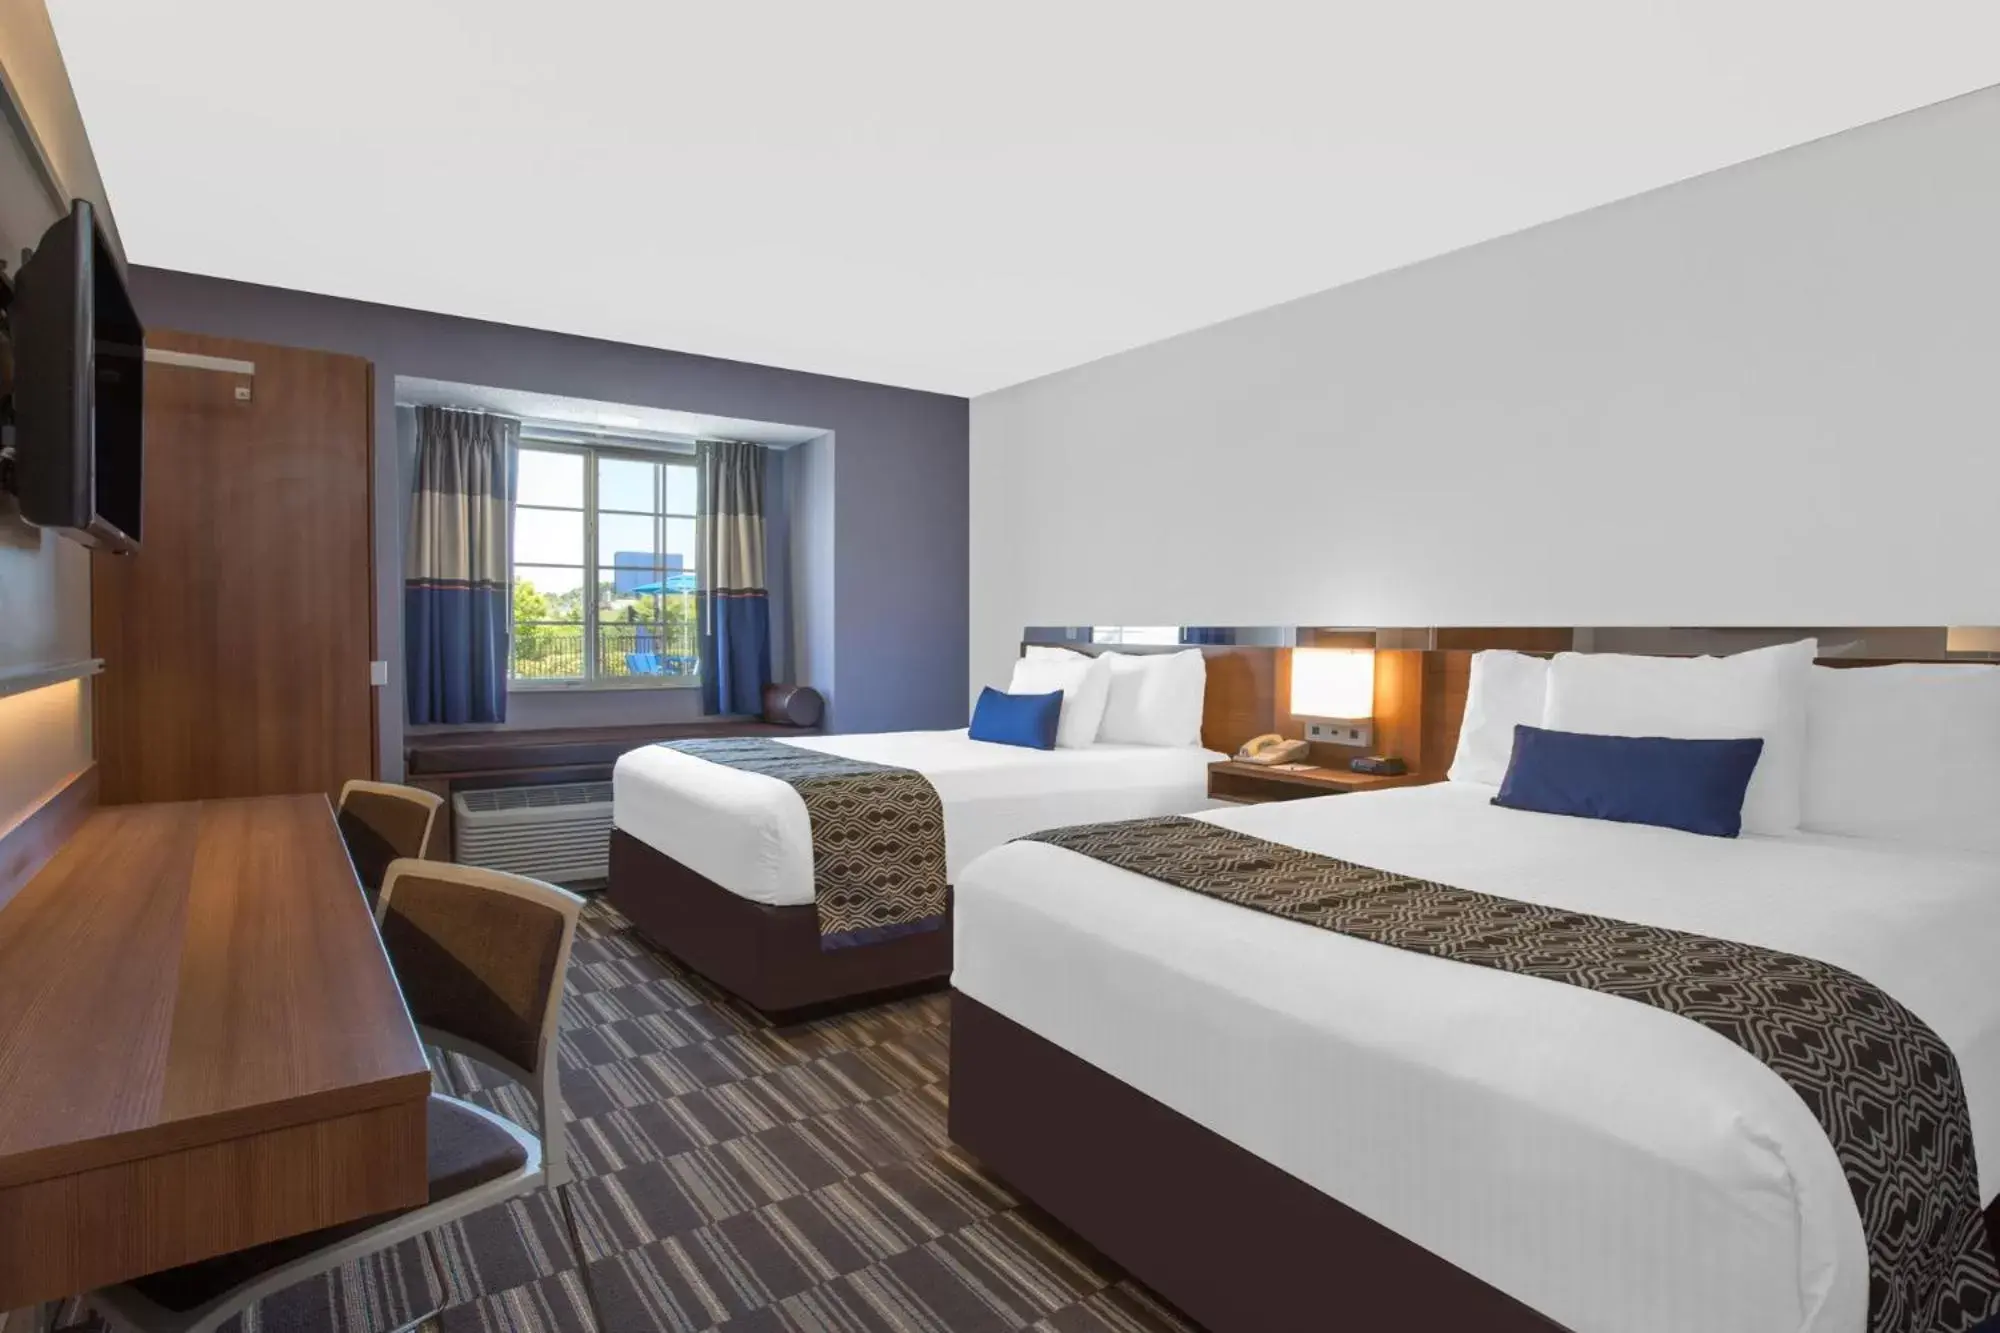 Bedroom in Microtel Inn & Suites by Wyndham Gardendale